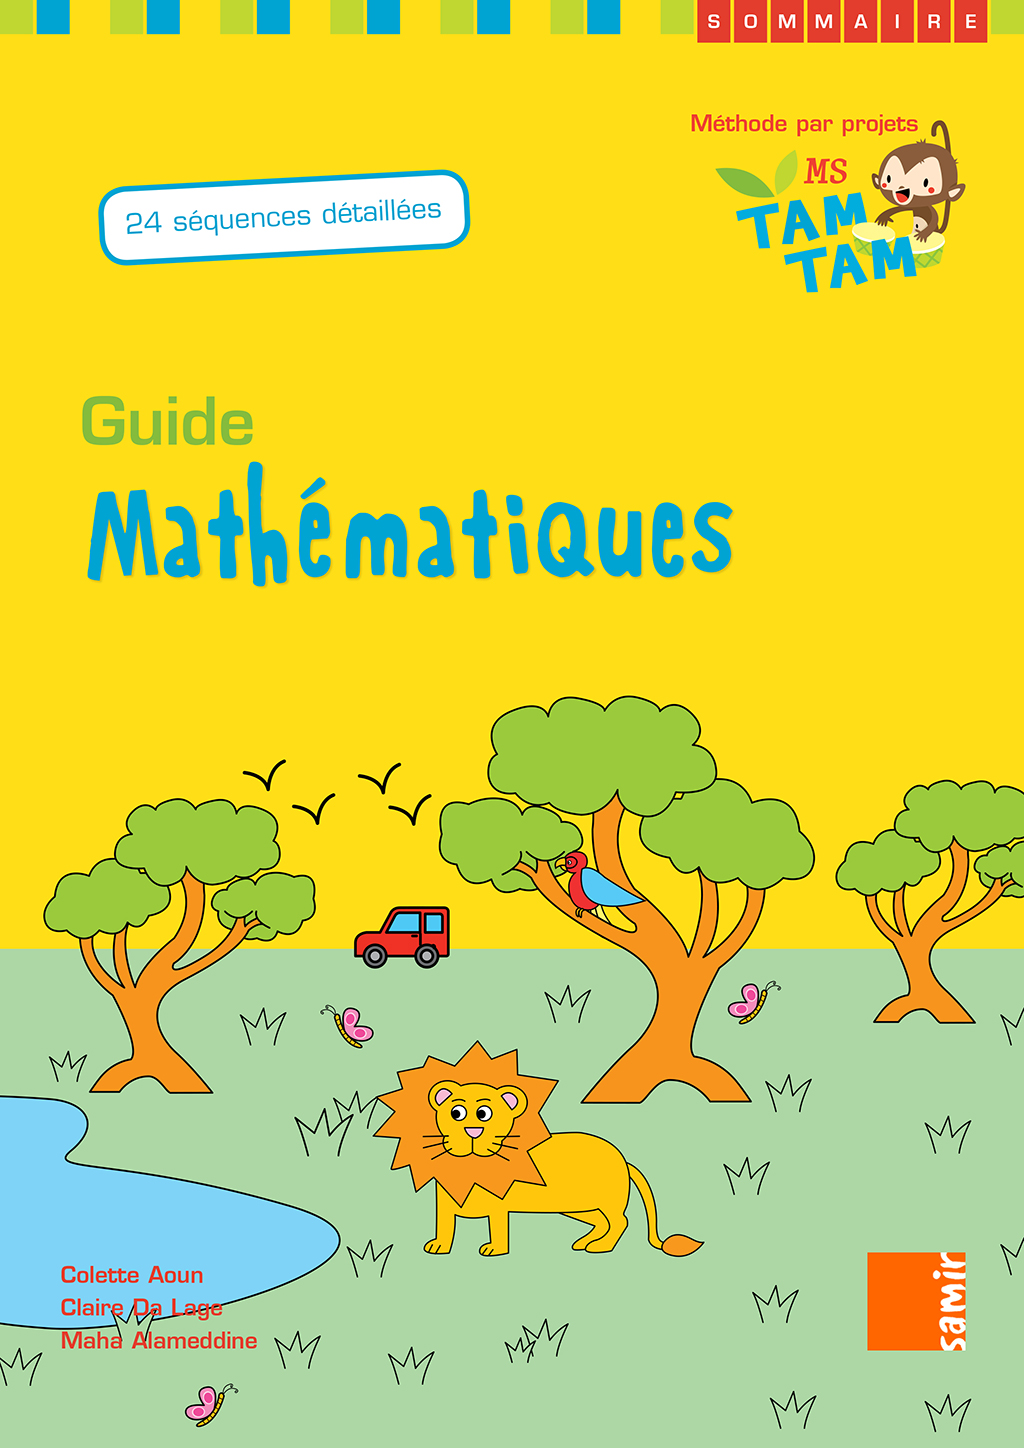 Samir Éditeur - Guide MS – P0 Mathématiques - Couverture